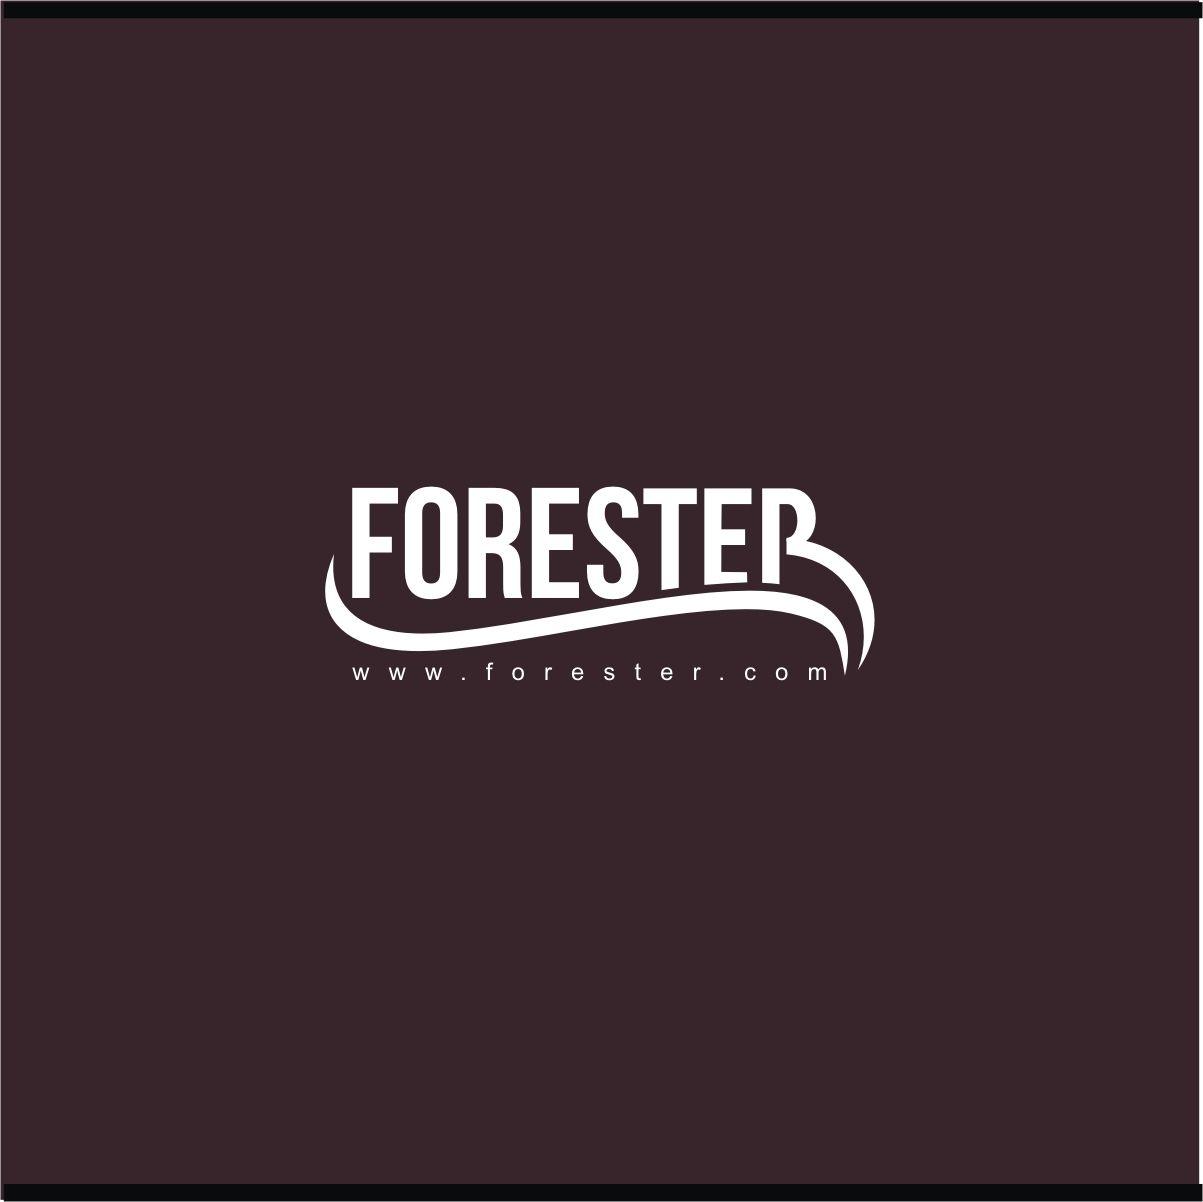 Forester Logo - Personable, Elegant, Manufacturing Logo Design for Forester